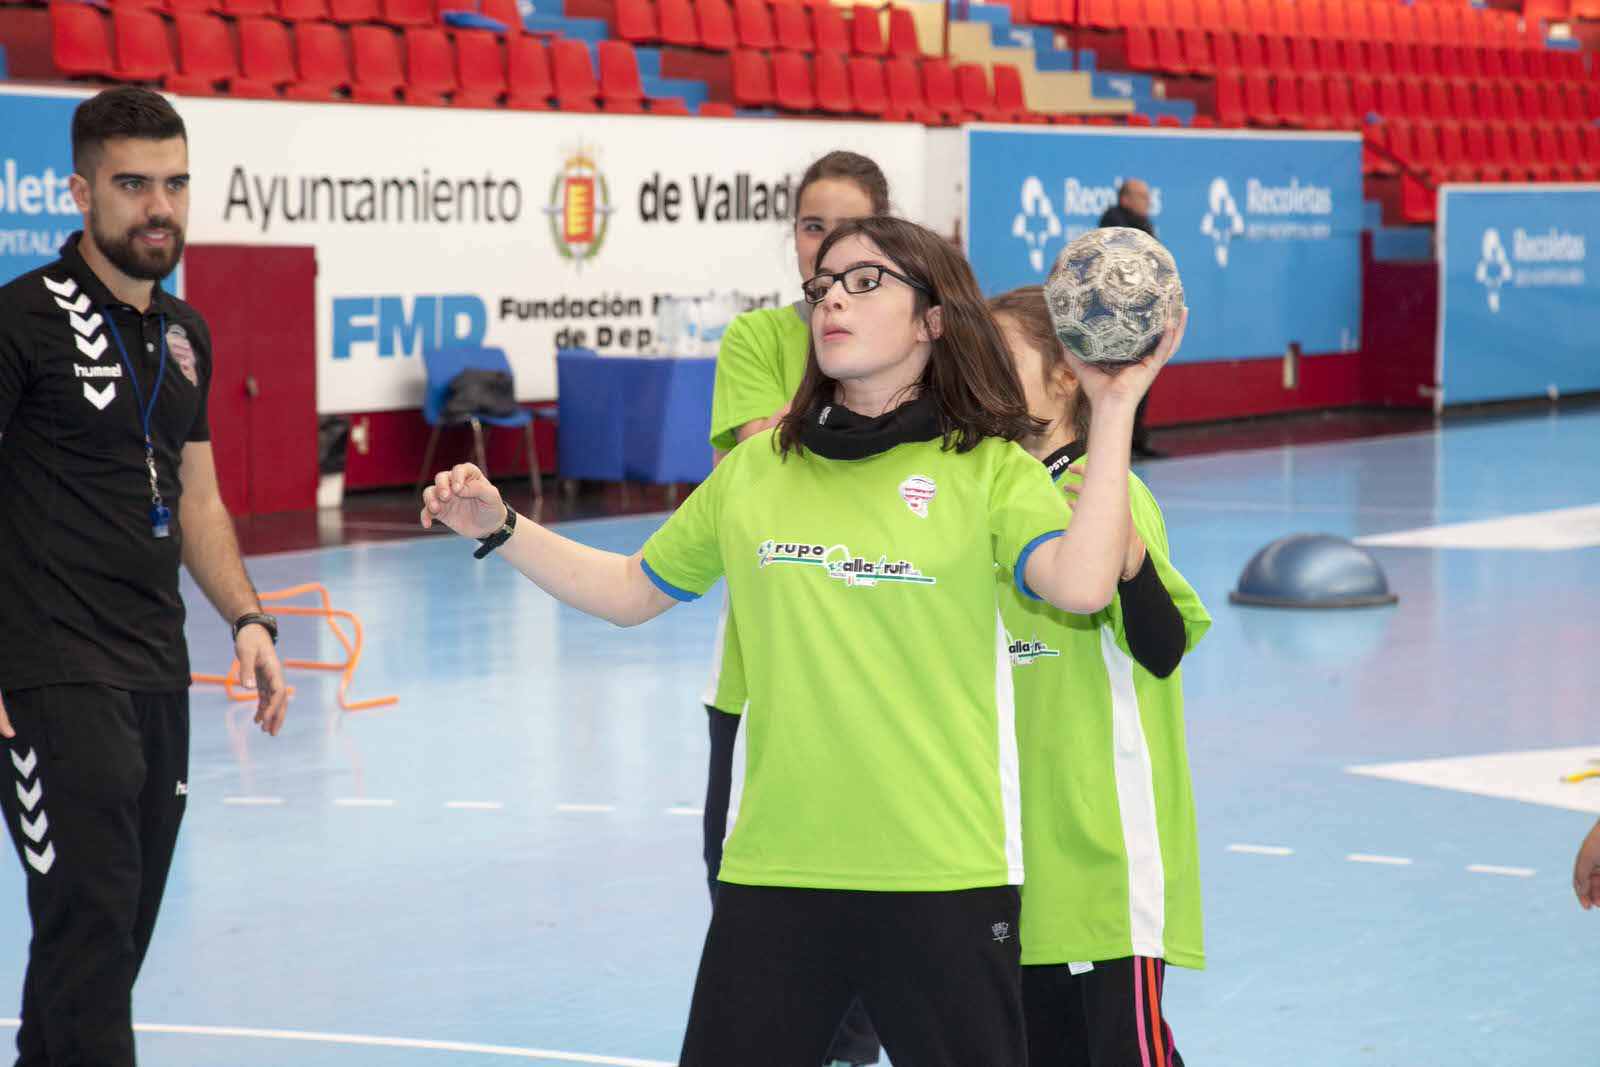 El club lanza la campaña ‘Hábitos y vida saludable con el Recoletas Atlético Valladolid’ para fomentar un estilo de vida más sano | Galería 11 / 24